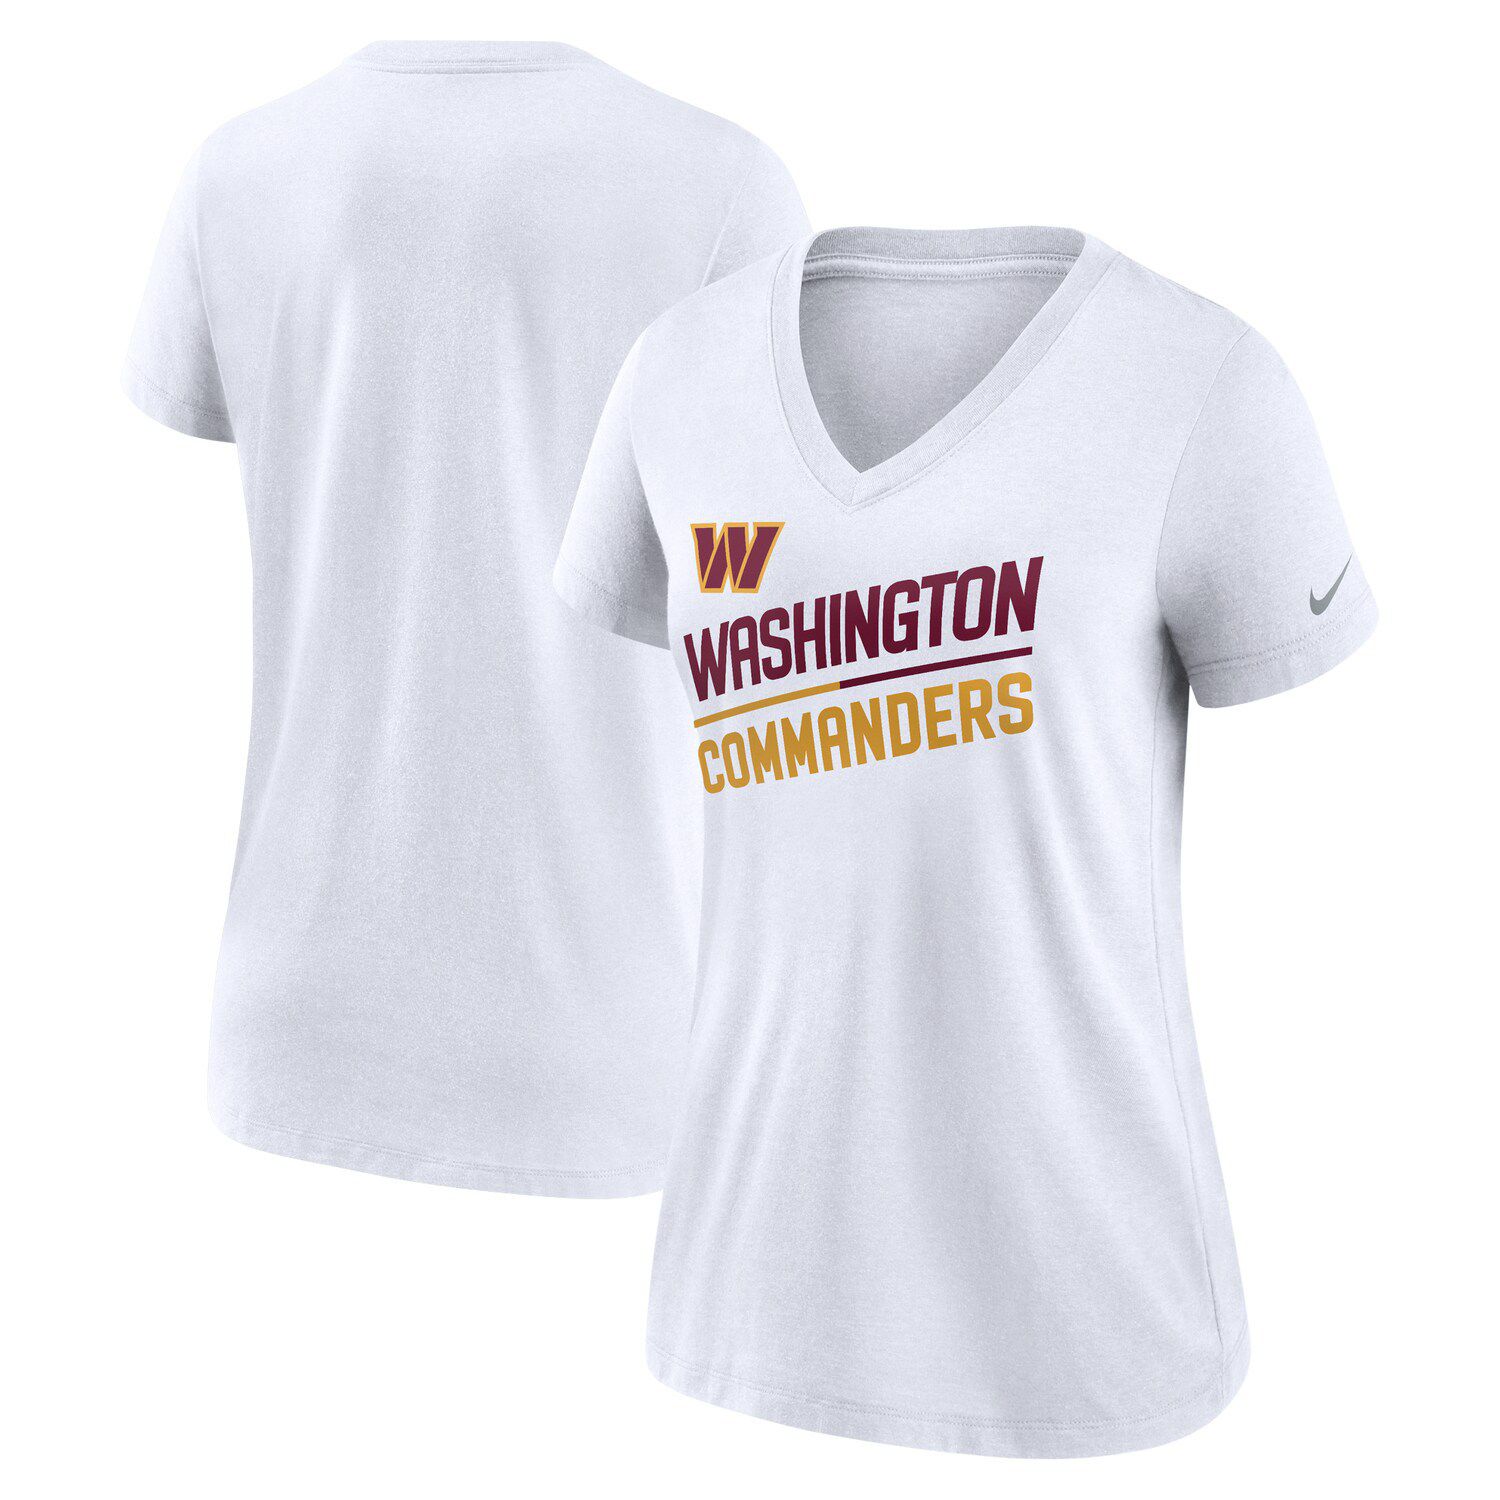 Women's Washington Commanders Shirt